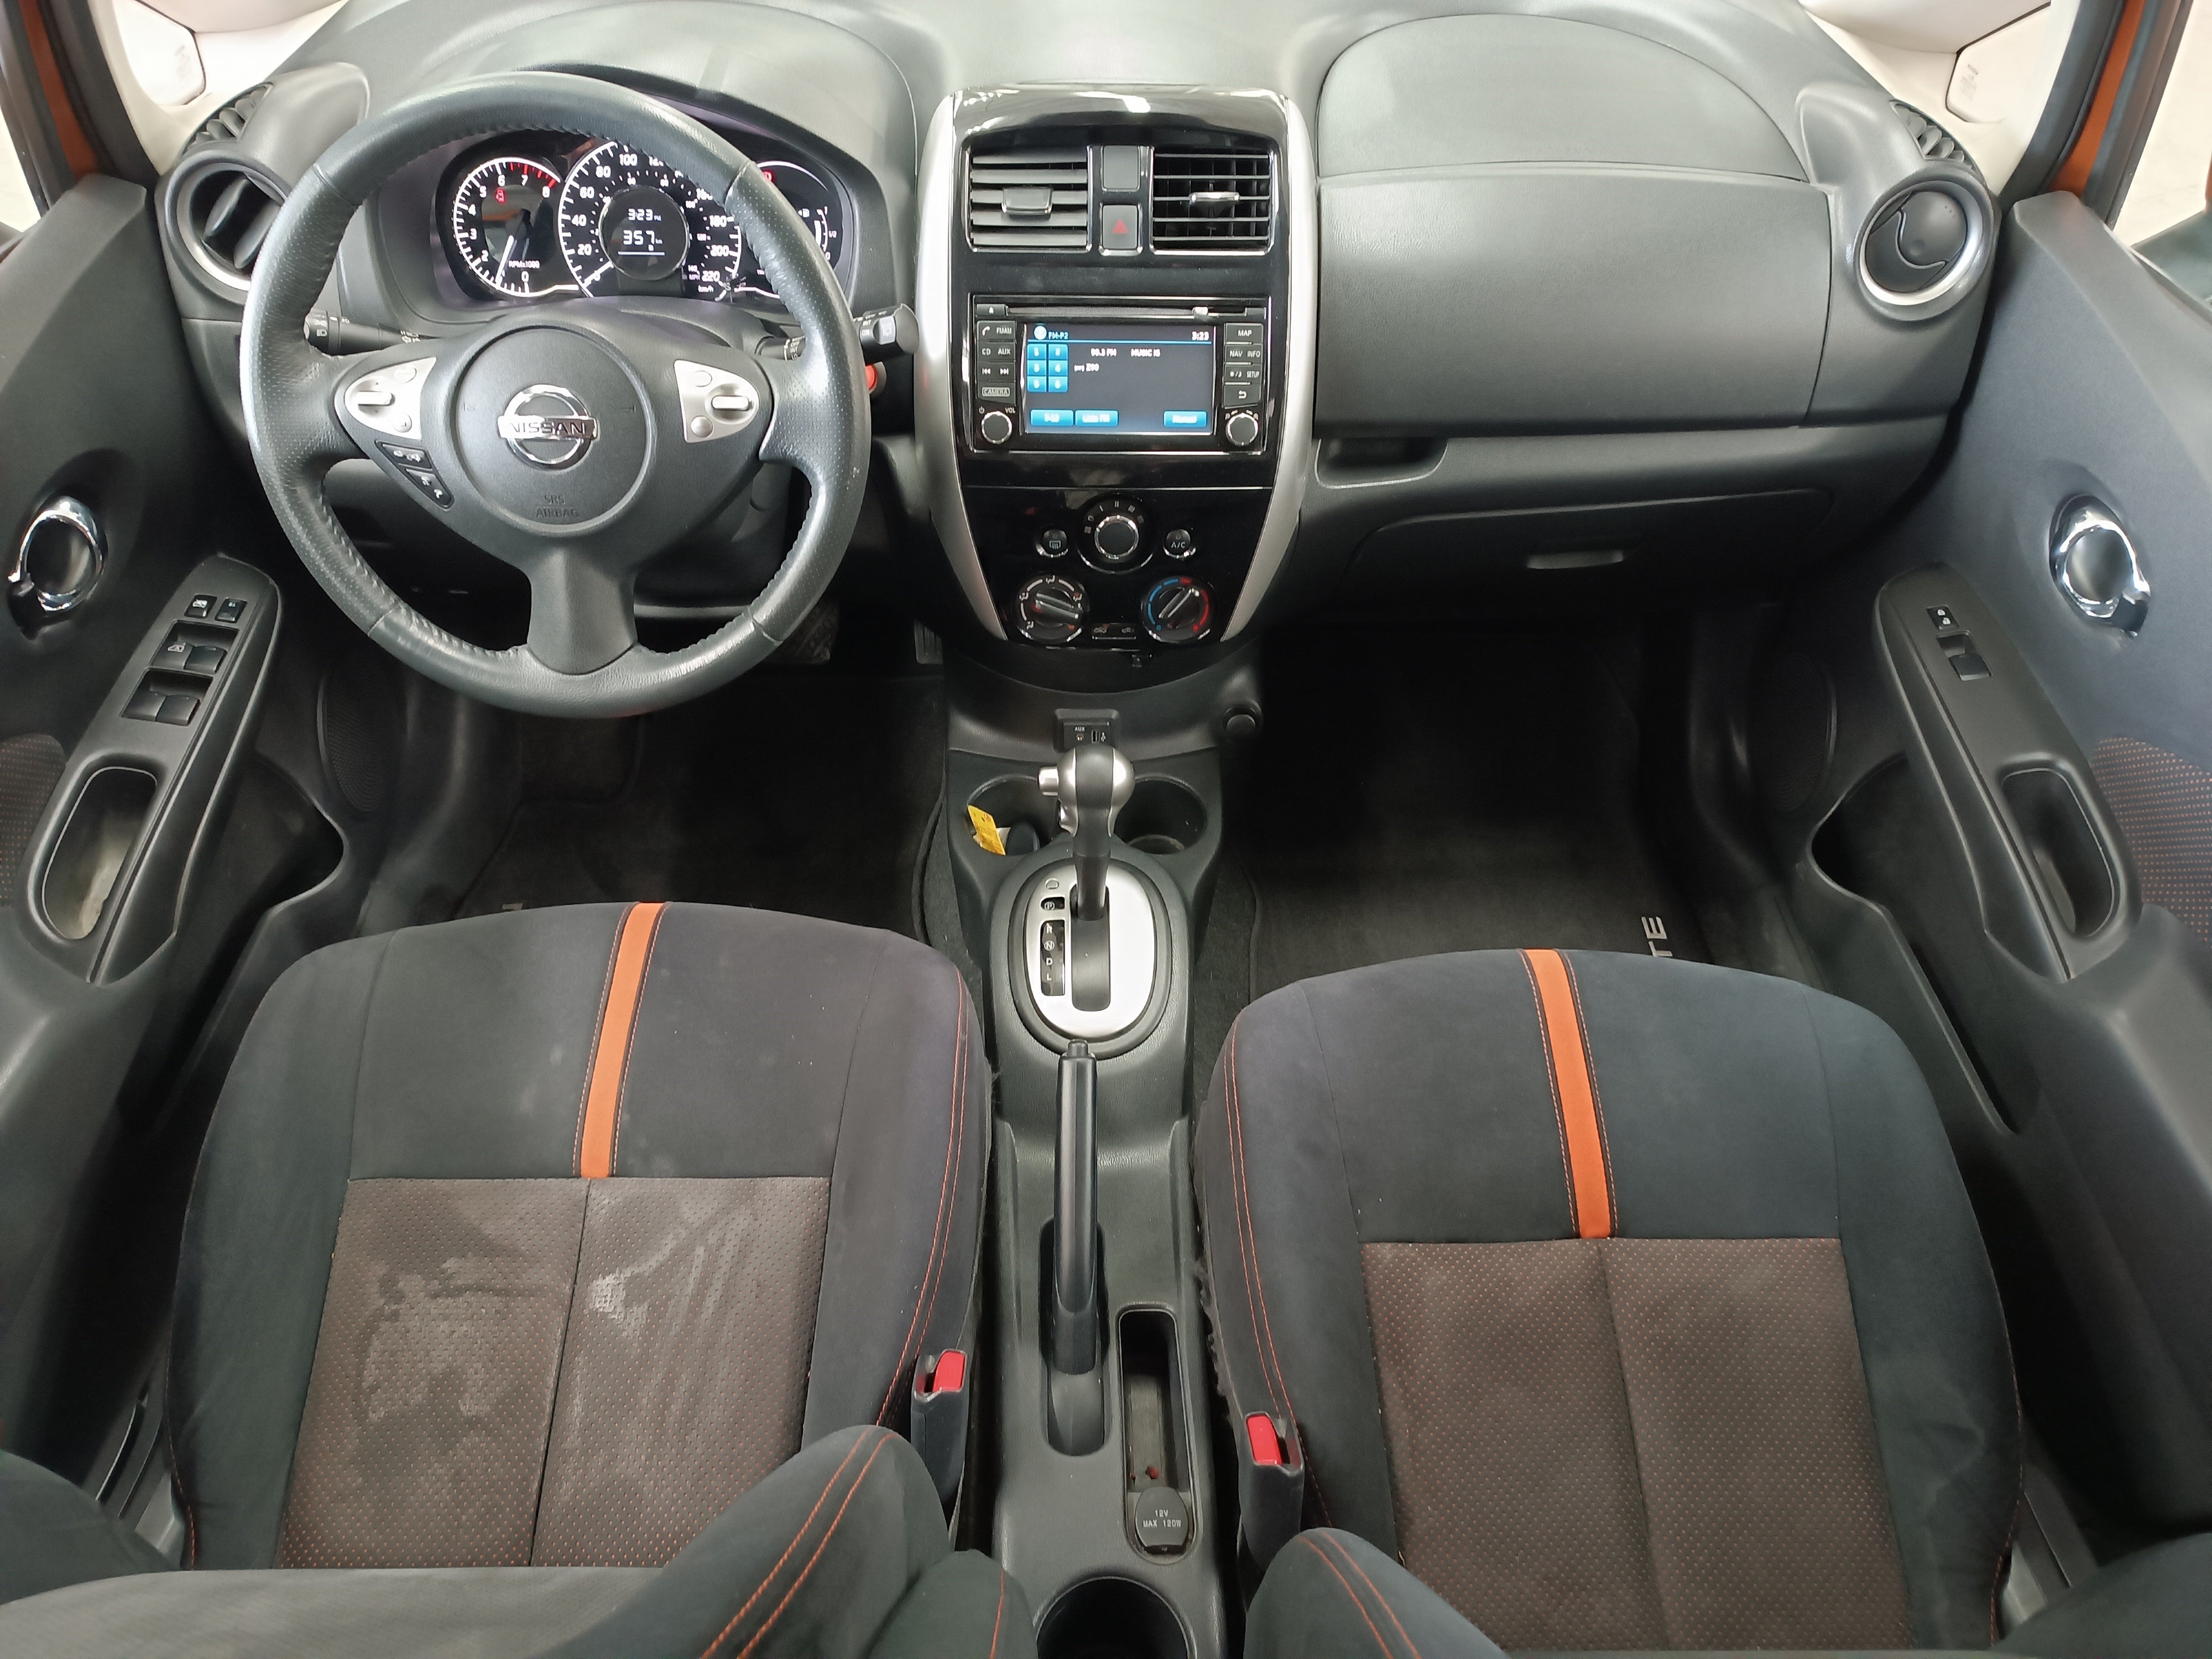 2019 Nissan NOTE 5 PTS SR CVT AAC F NIEBLA GPS FALDON RA-16